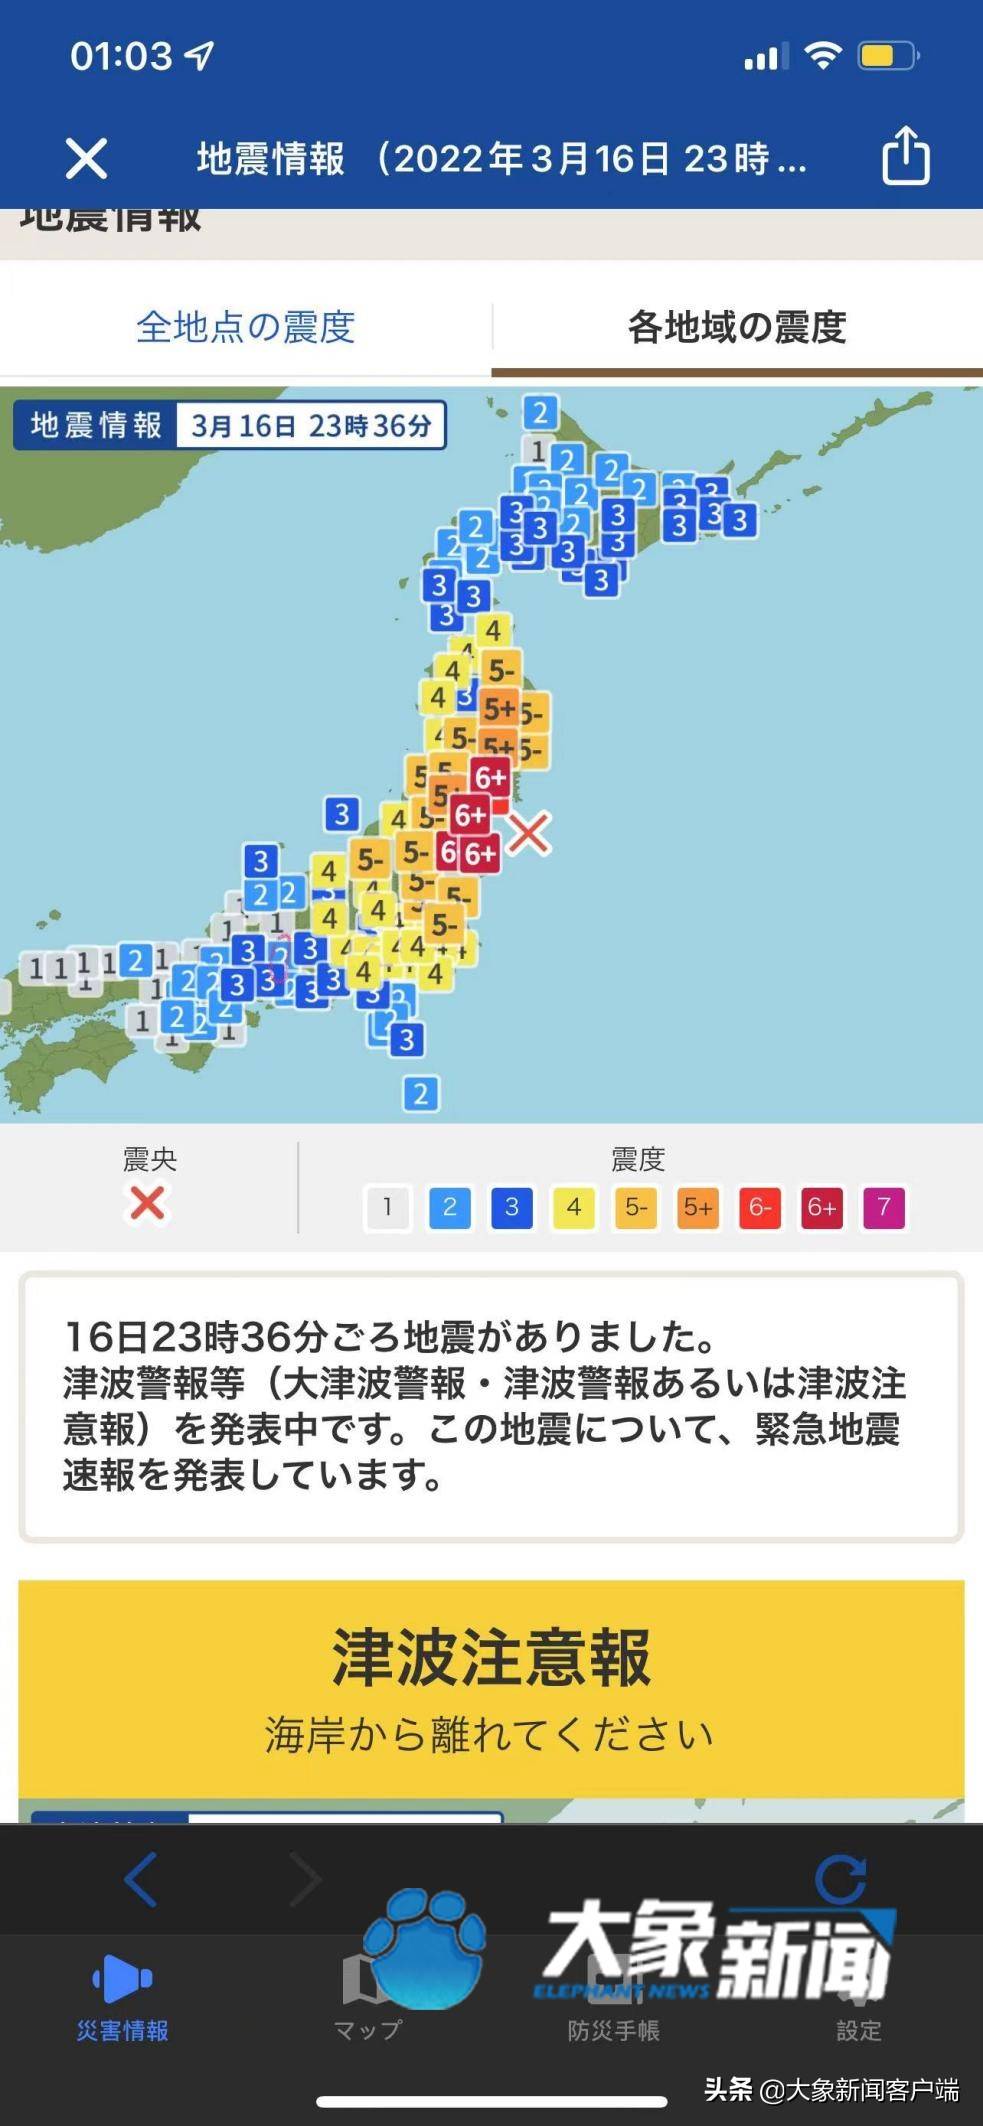 连线日本 亲历者讲述 东京正常 大家比较担心福岛 地震 孙科 时间